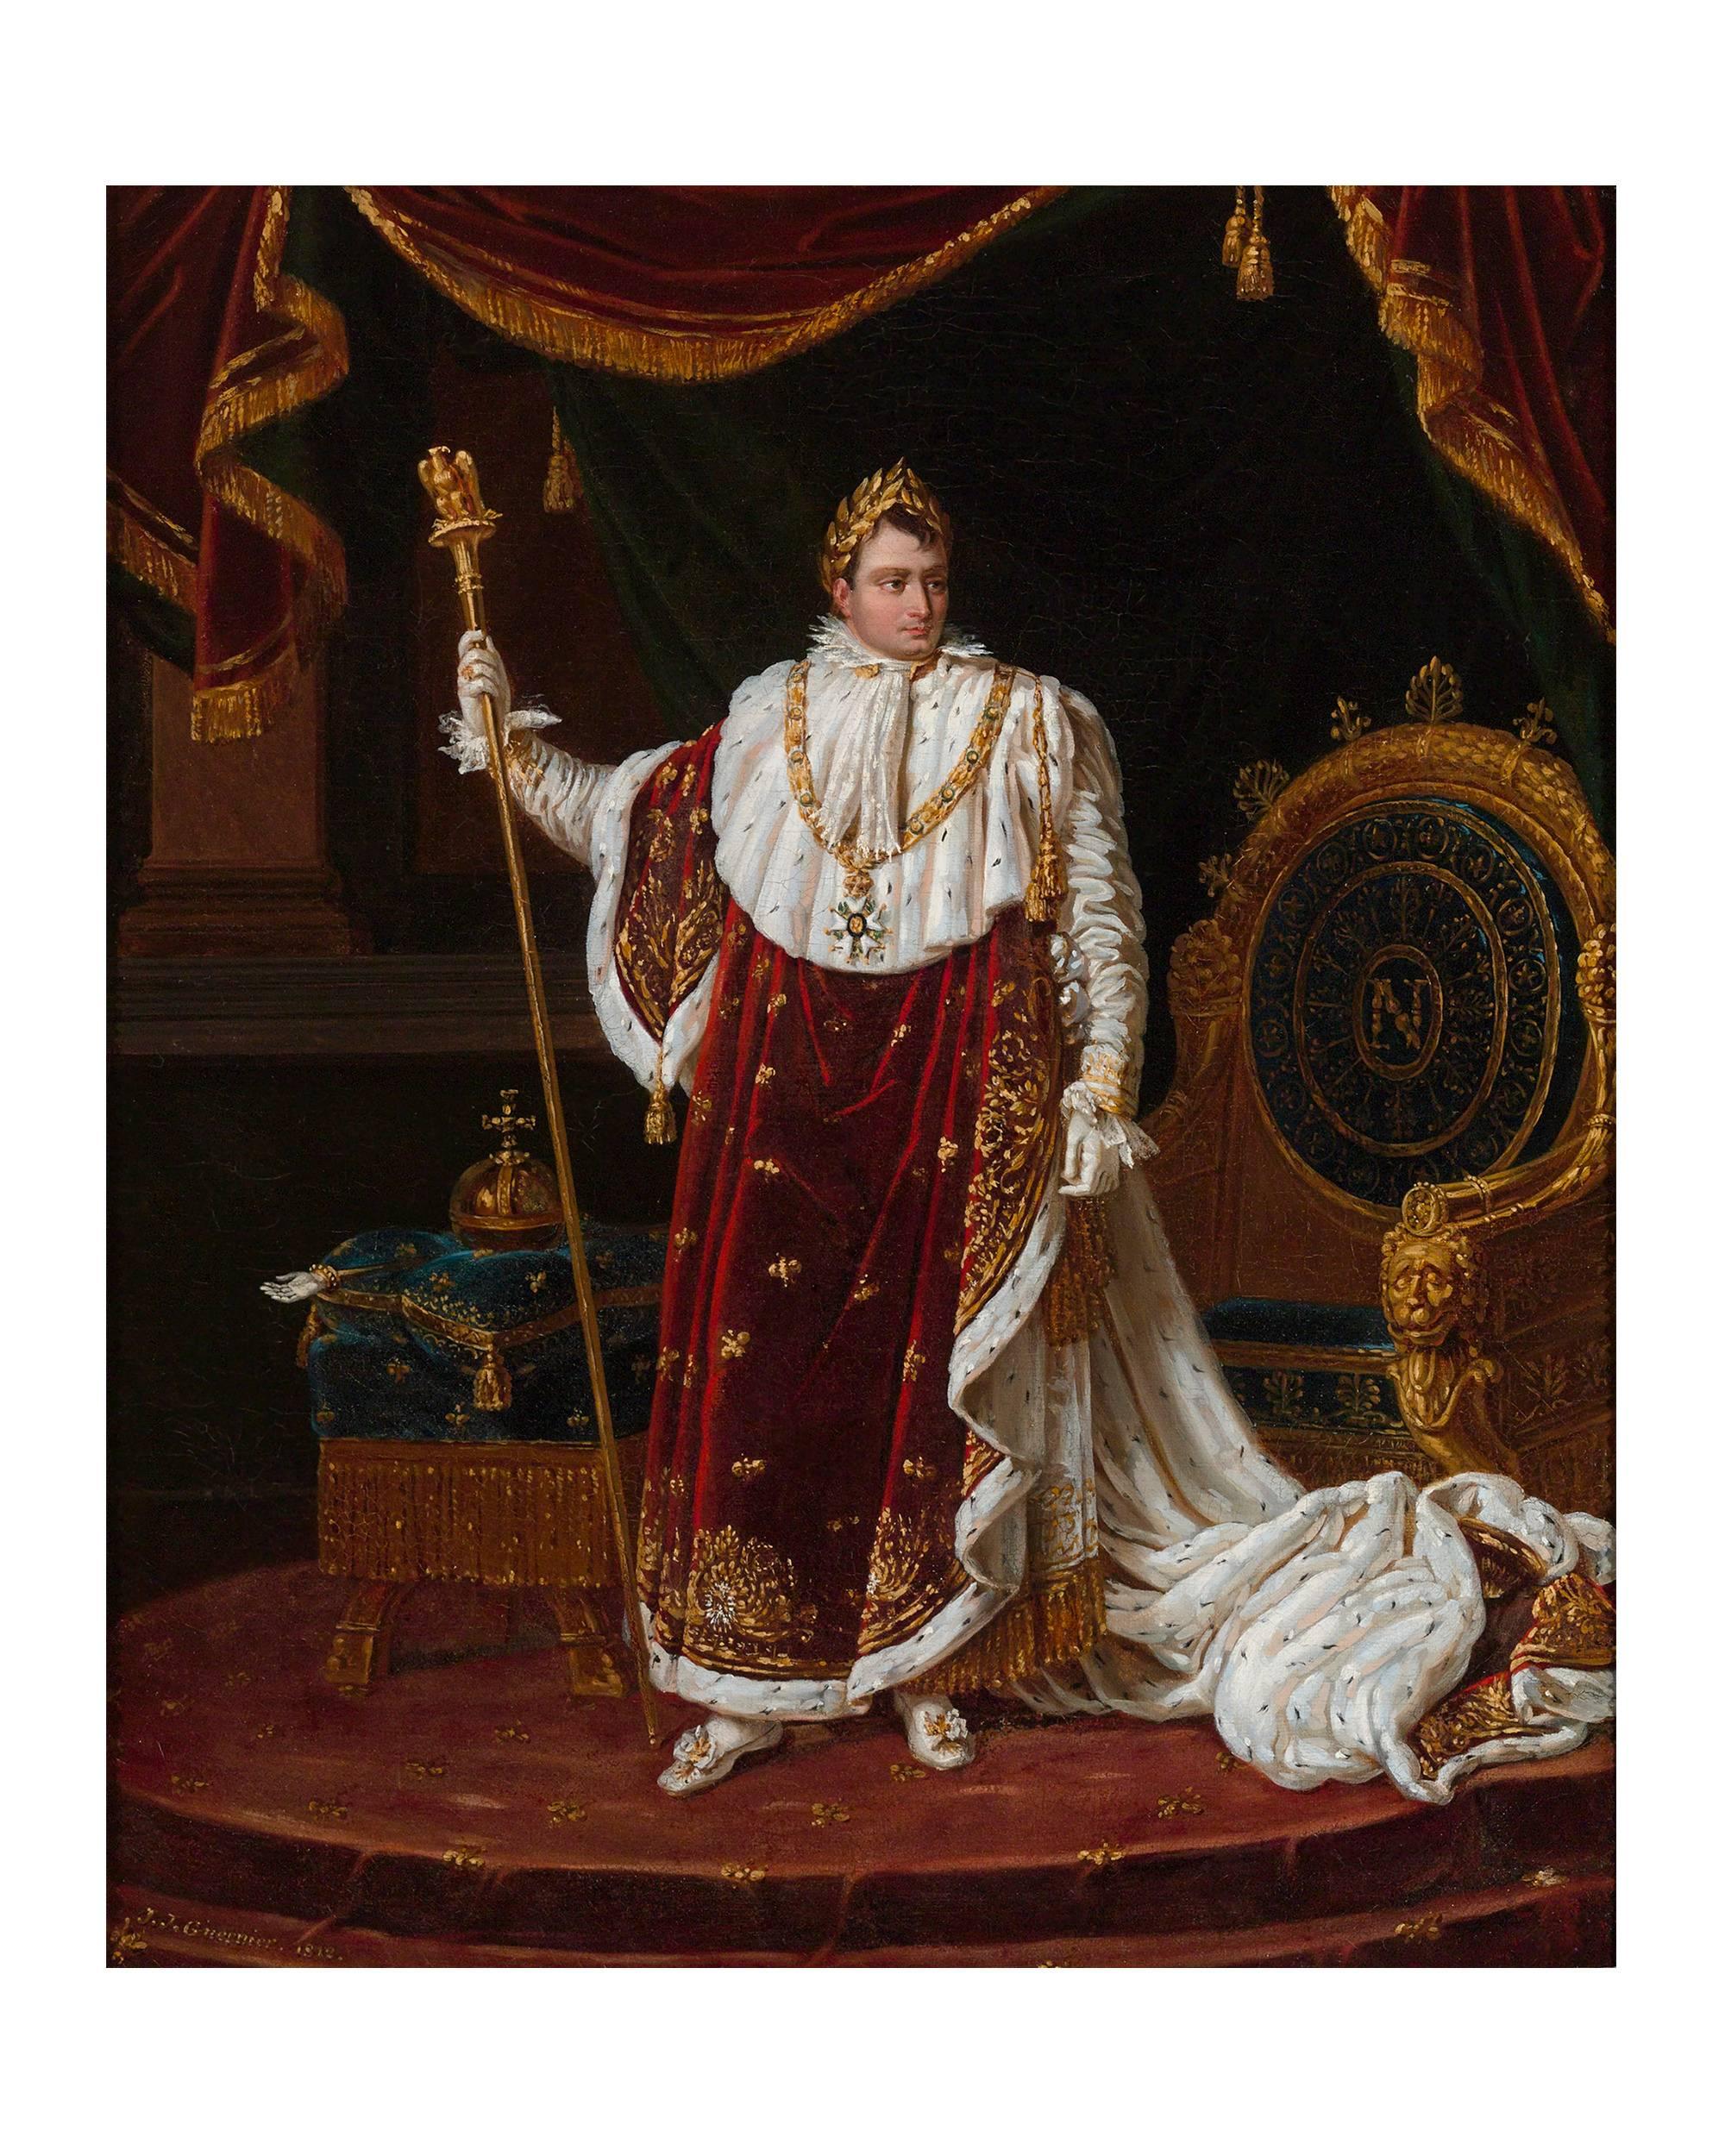 Emperor Napoléon I in Coronation Robes - Painting by Joseph Joachim Guernier